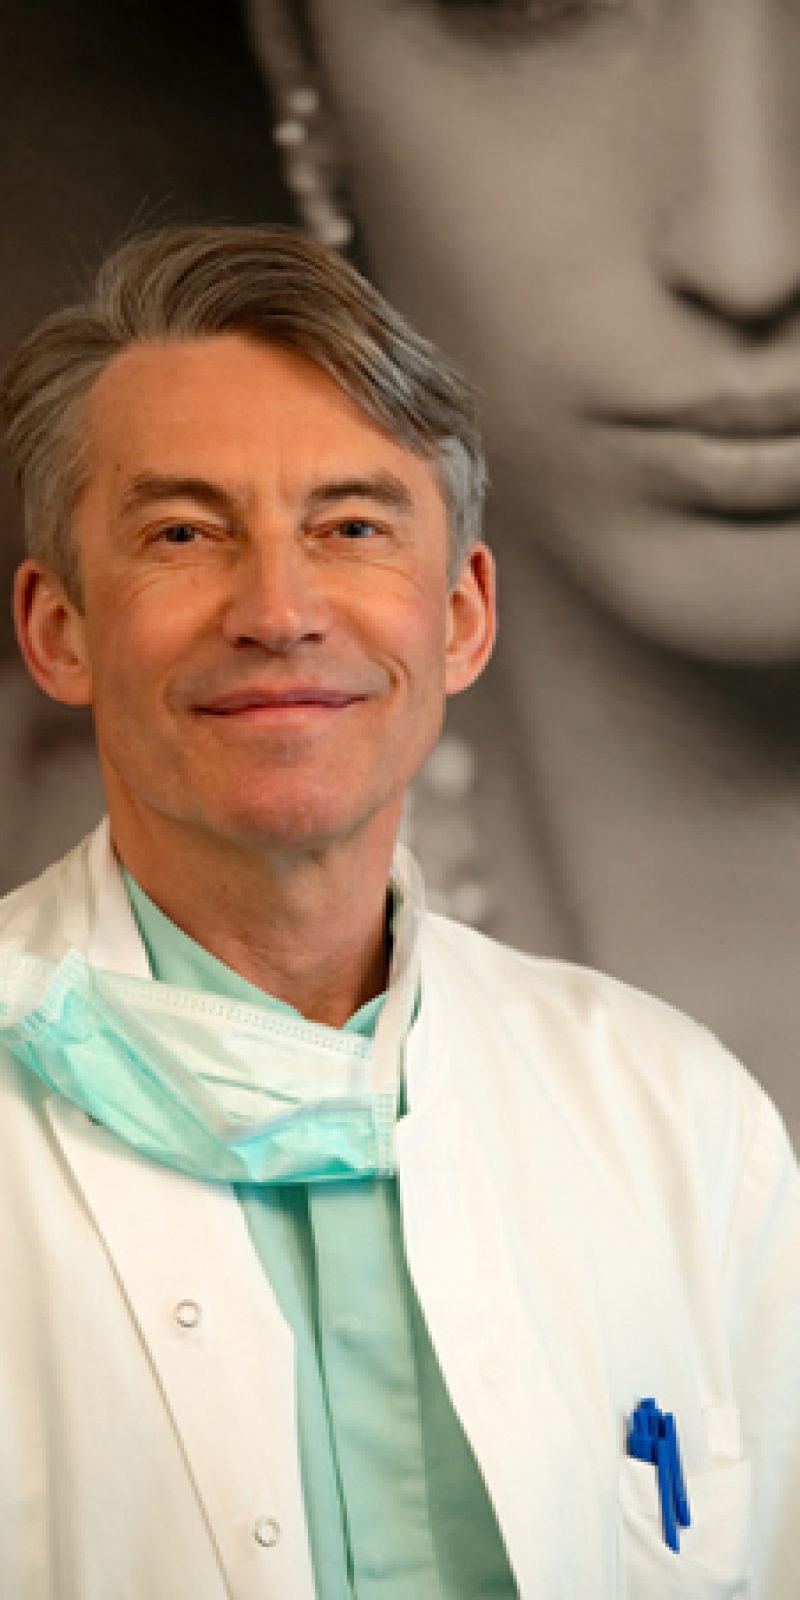 Docteur Louis-Philippe Dombard est Specialiste chirurgien plasticien